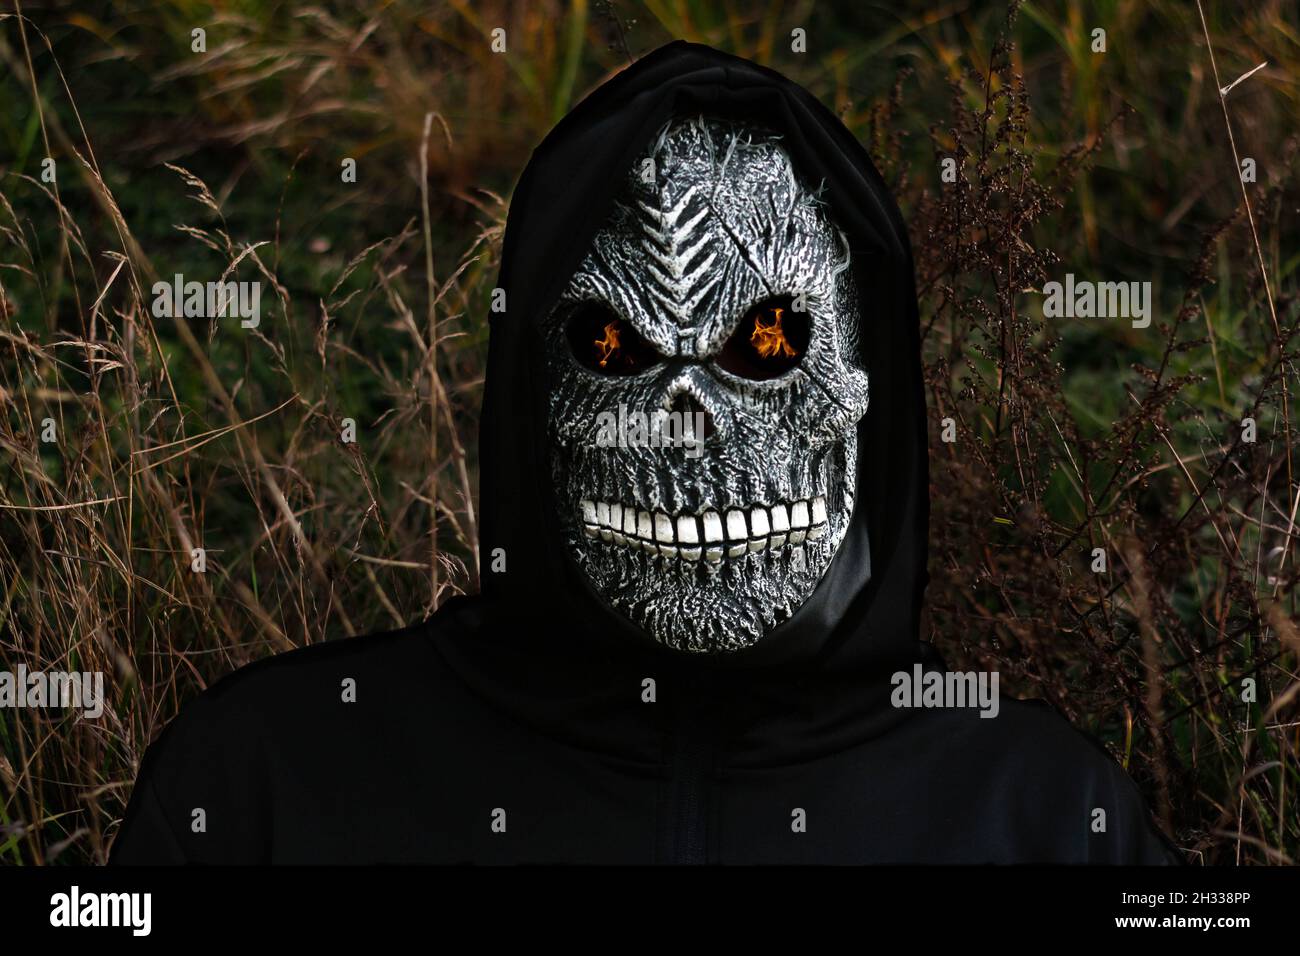 Nahaufnahme des grimmigen Reaper. Mann in Totenmaske mit Feuerflamme in den Augen auf dunklem Natur trockenem Gras Hintergrund. Faschingskostüm, gruselige Zähne. Hallo Stockfoto